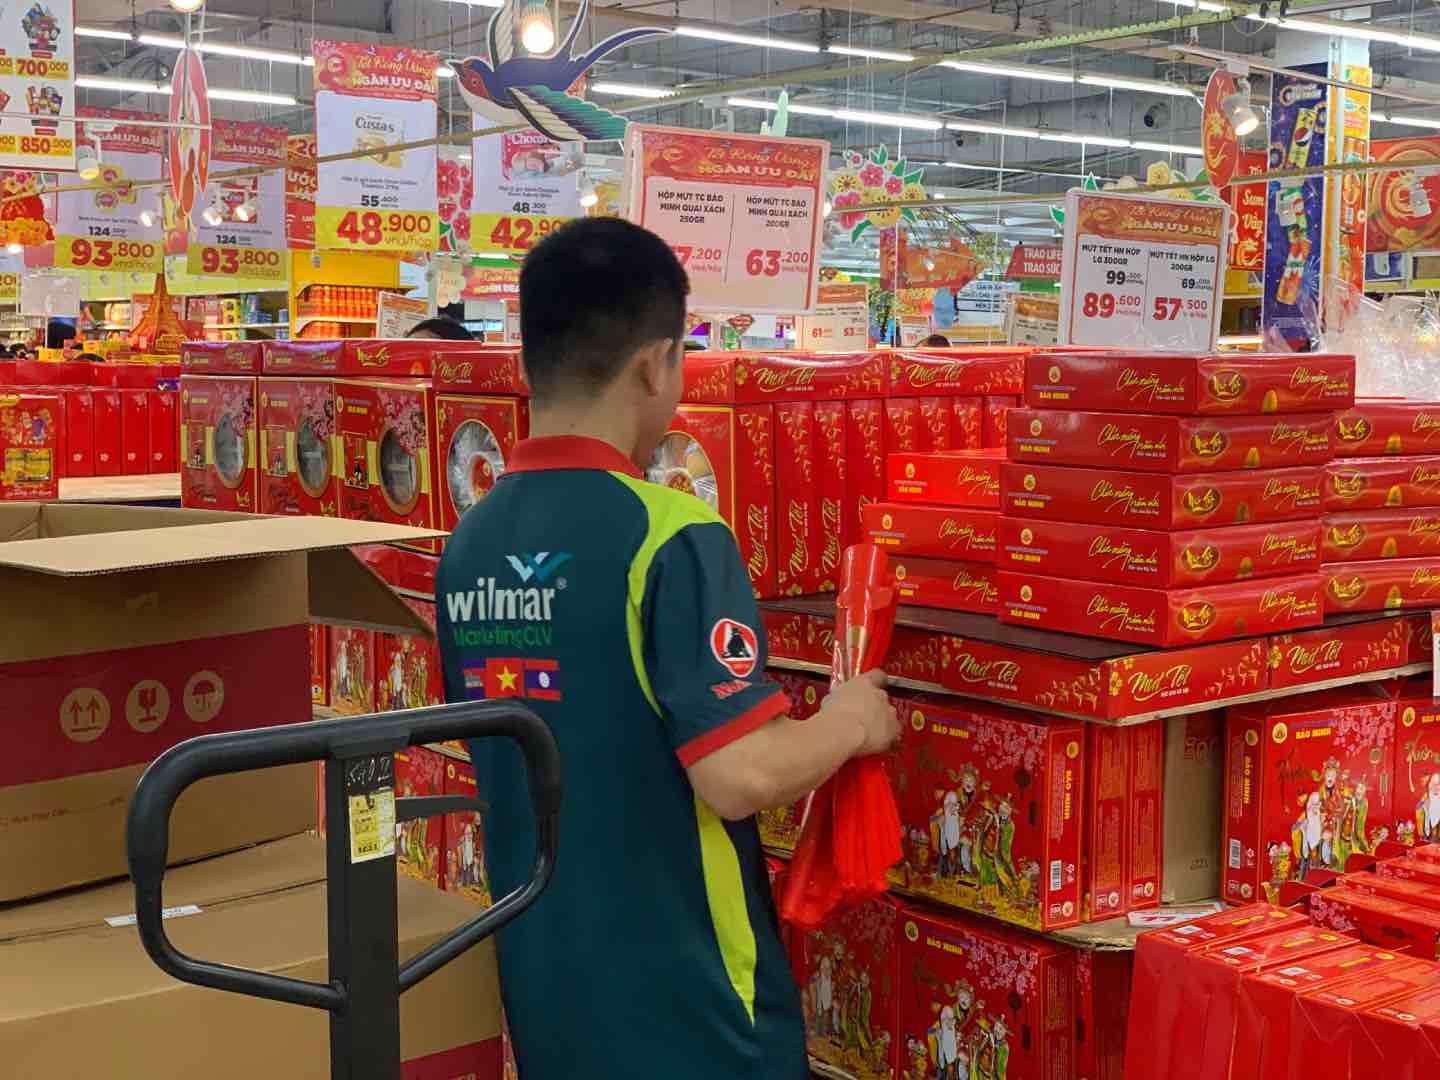 Nhân viên siêu thị phải liên tục bổ sung hàng hoá lên kệ để phục vụ người dân. Ảnh: Nhật Minh